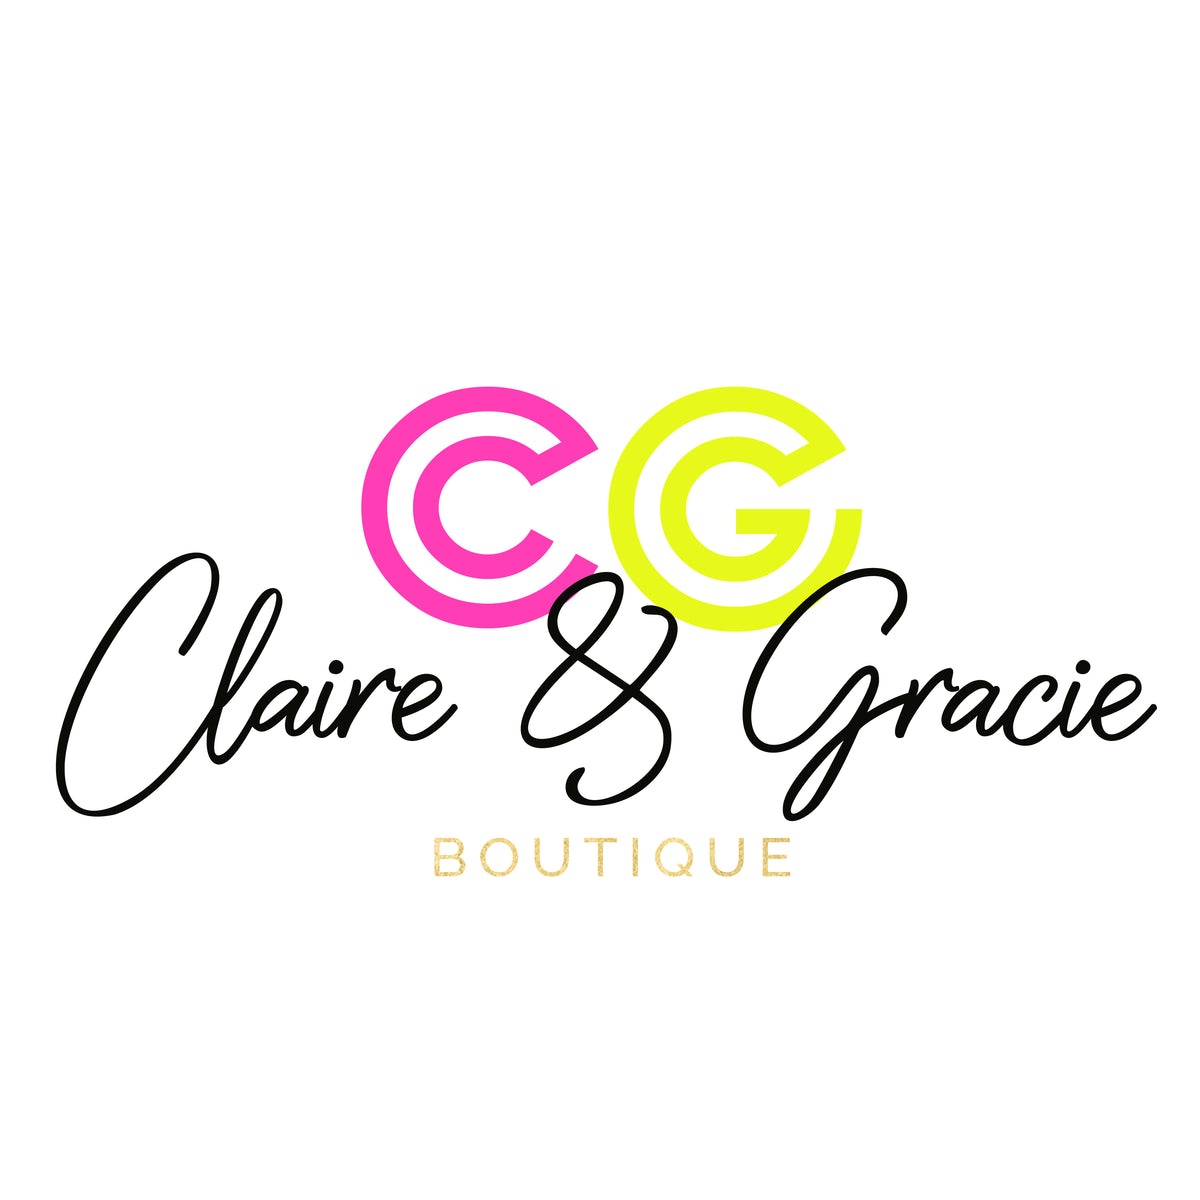 Claire & Gracie Boutique – Claire and Gracie Boutique